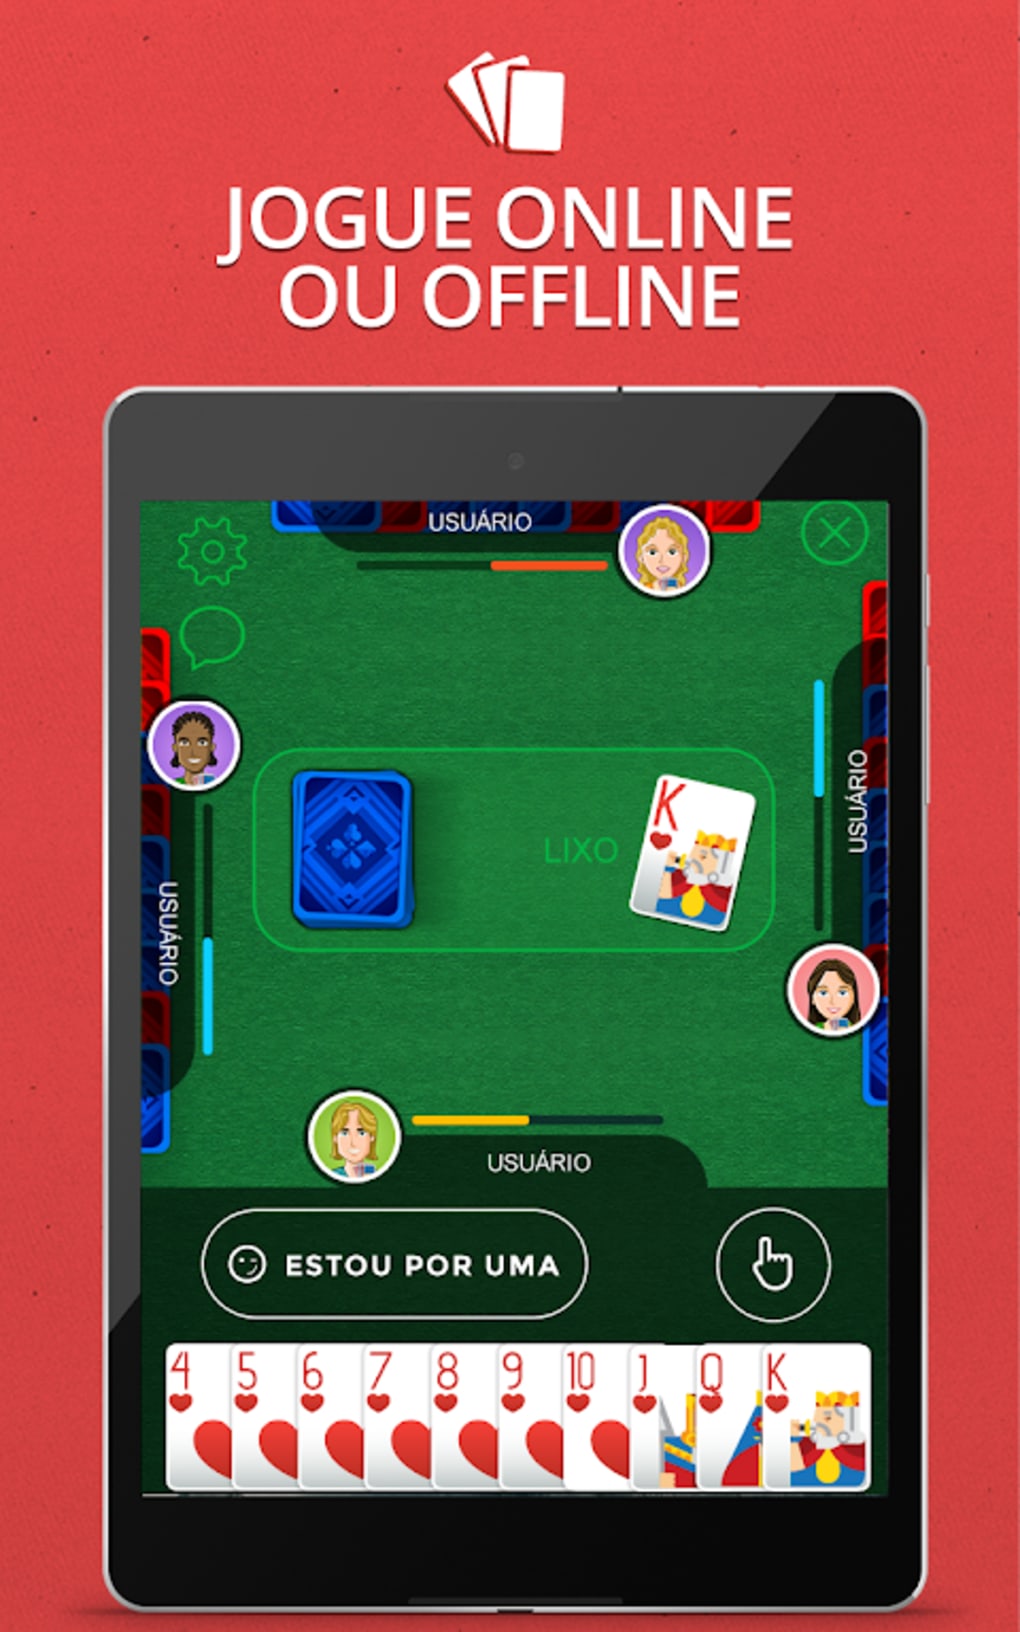 Cacheta - Pife - Jogo online APK (Android Game) - Baixar Grátis